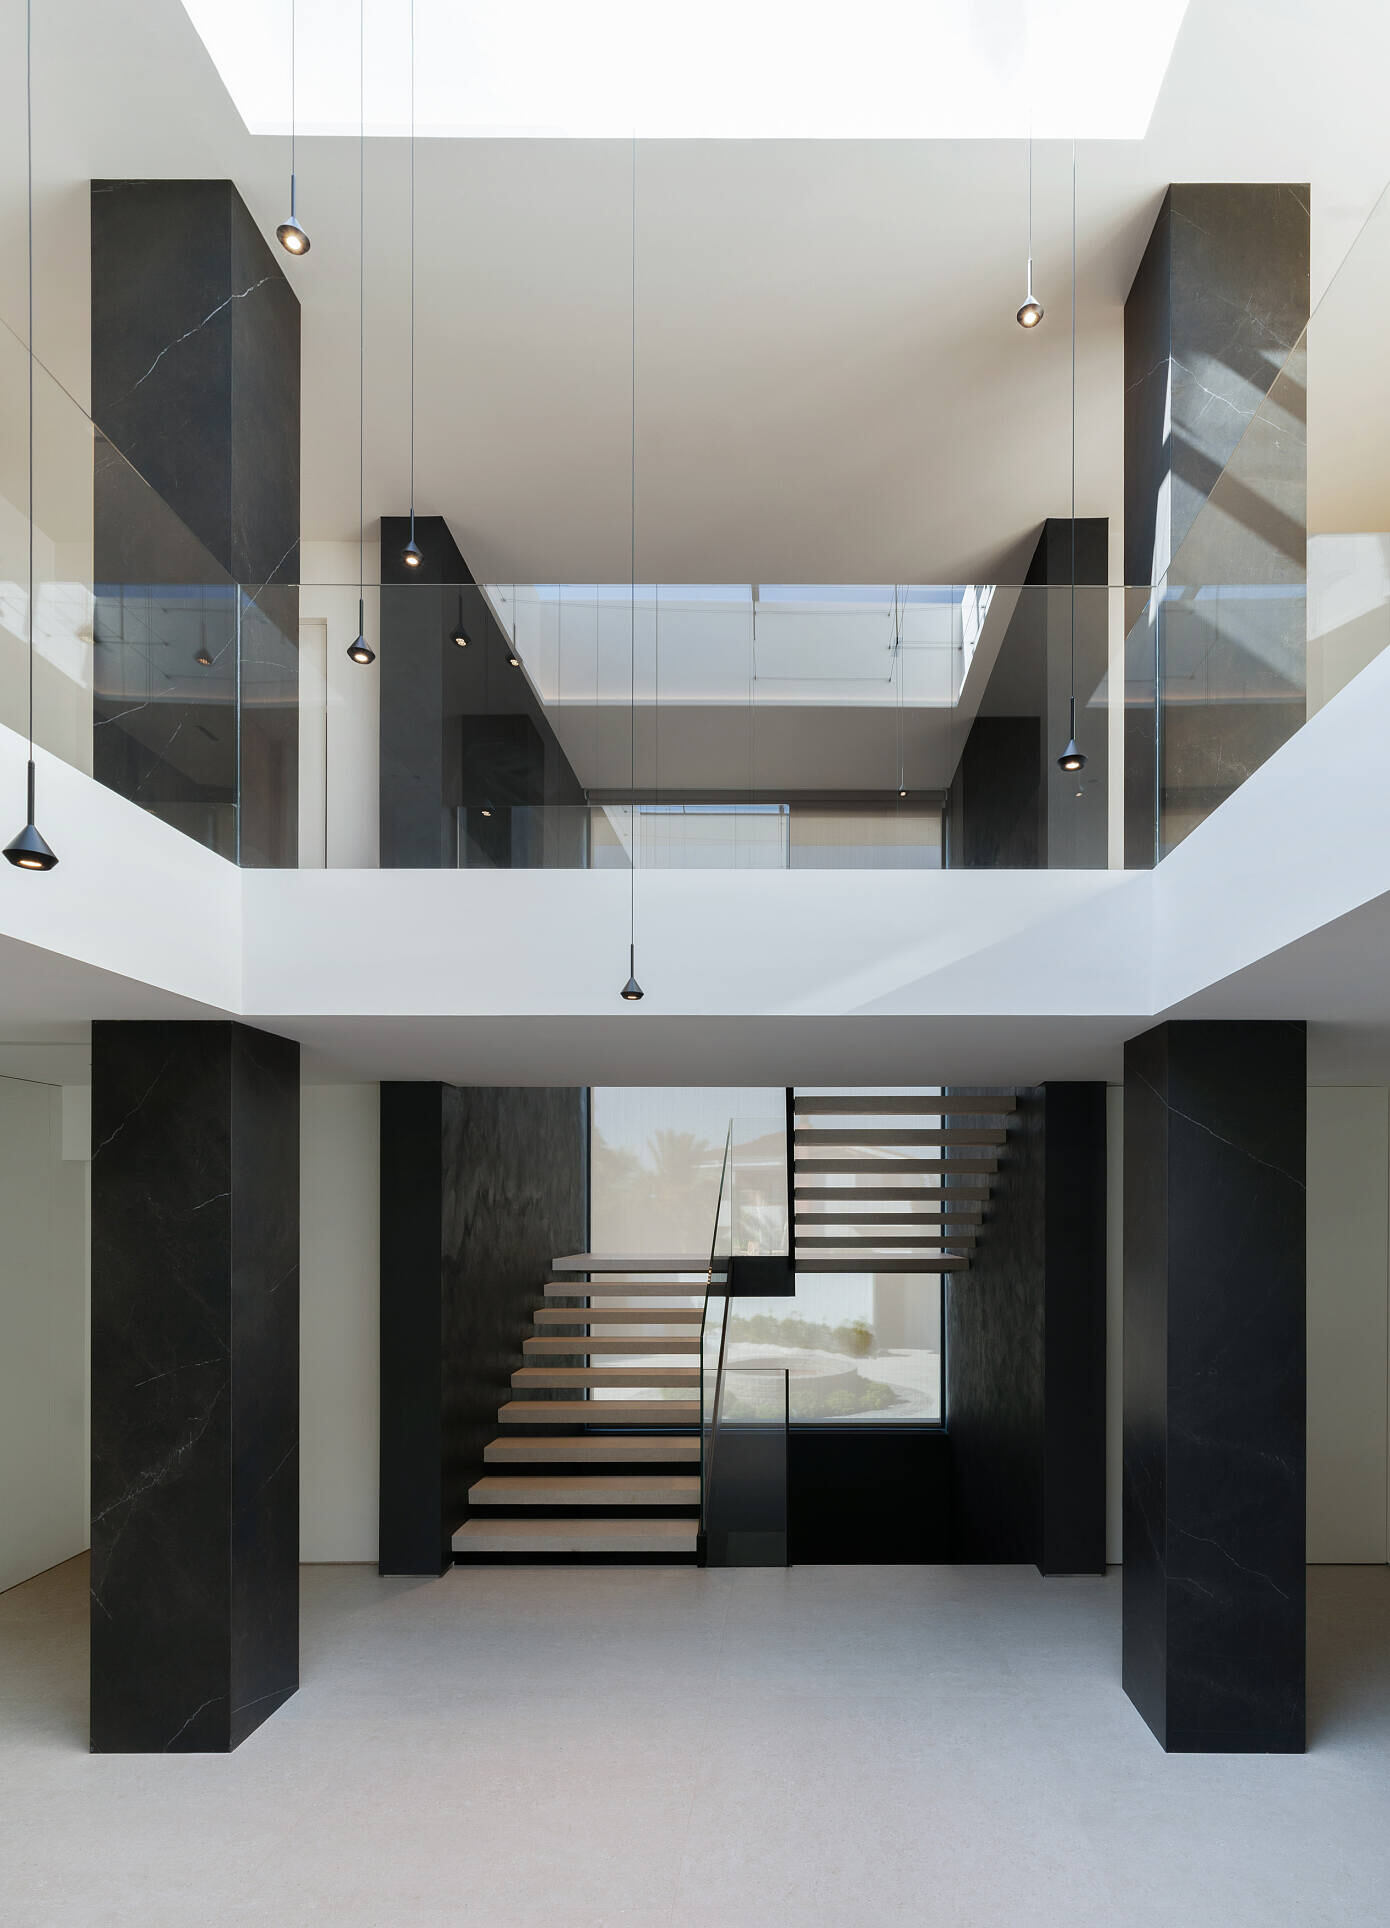 Cruz House by Ruben Muedra Estudio de Arquitectura